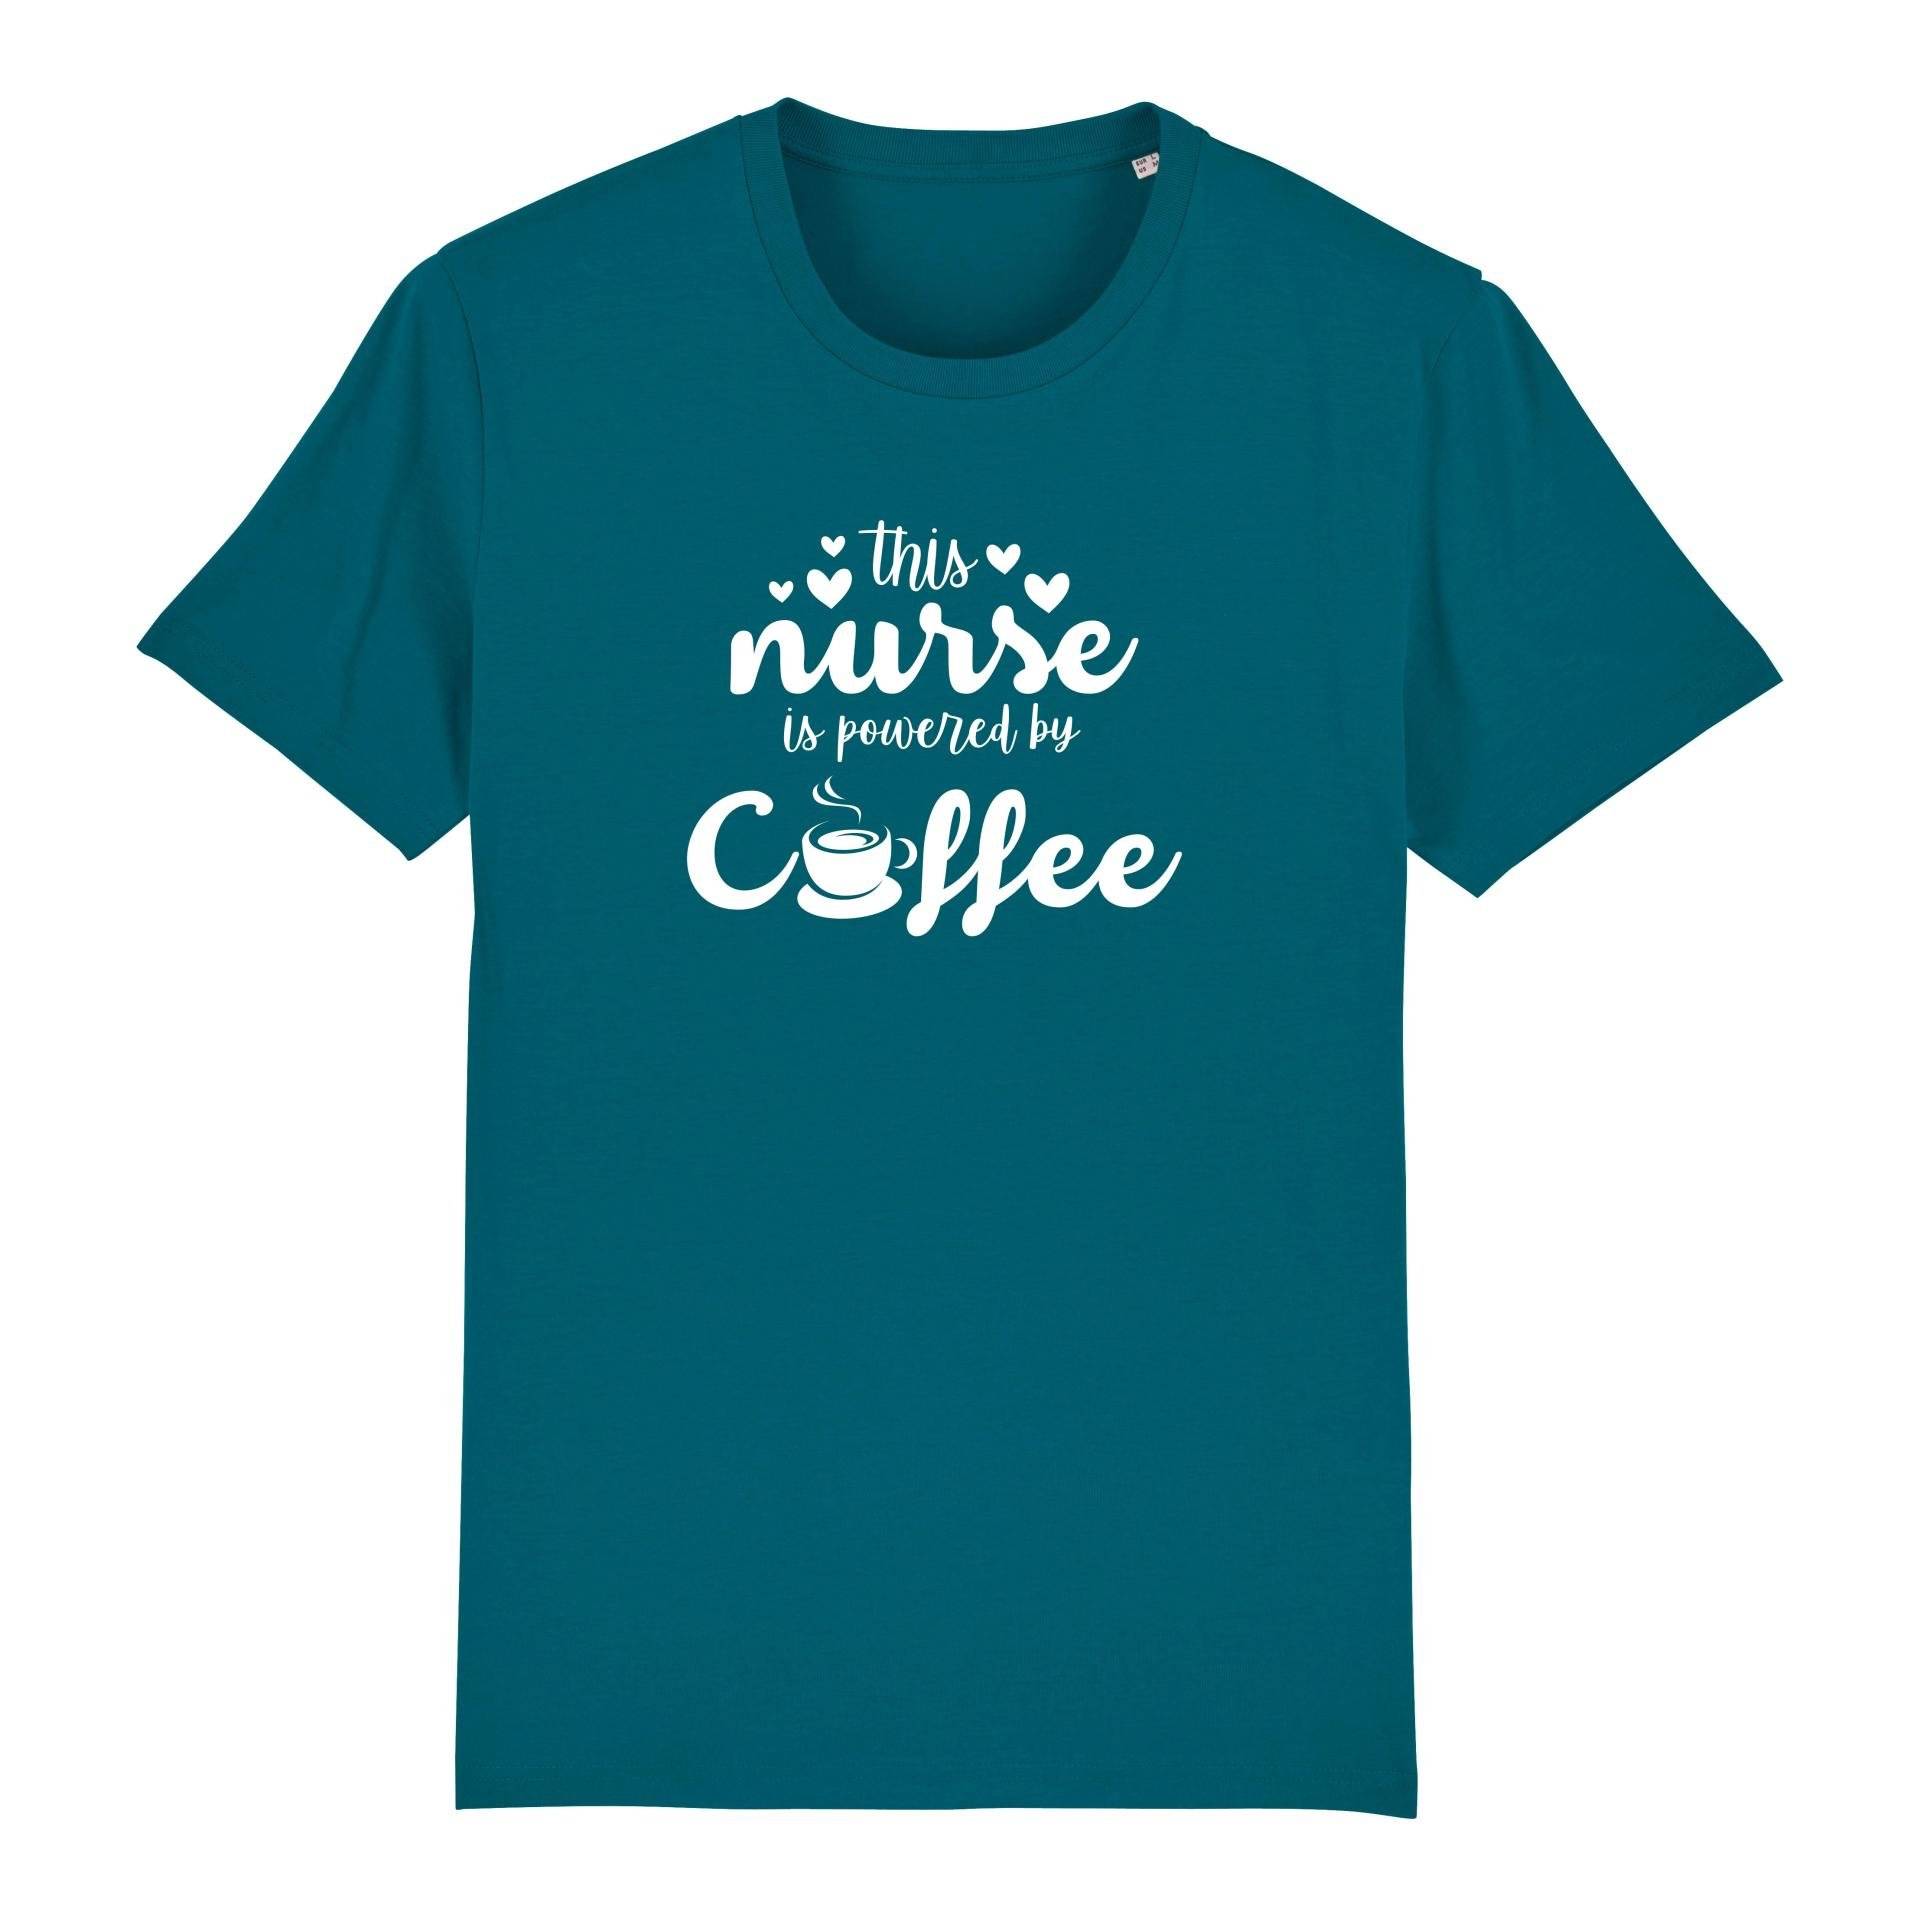 Schwesternuhr This nurse is powered by coffee Bio T-Shirt Unisex Farbe: Ocean Depth, Grösse: S von Schwesternuhr